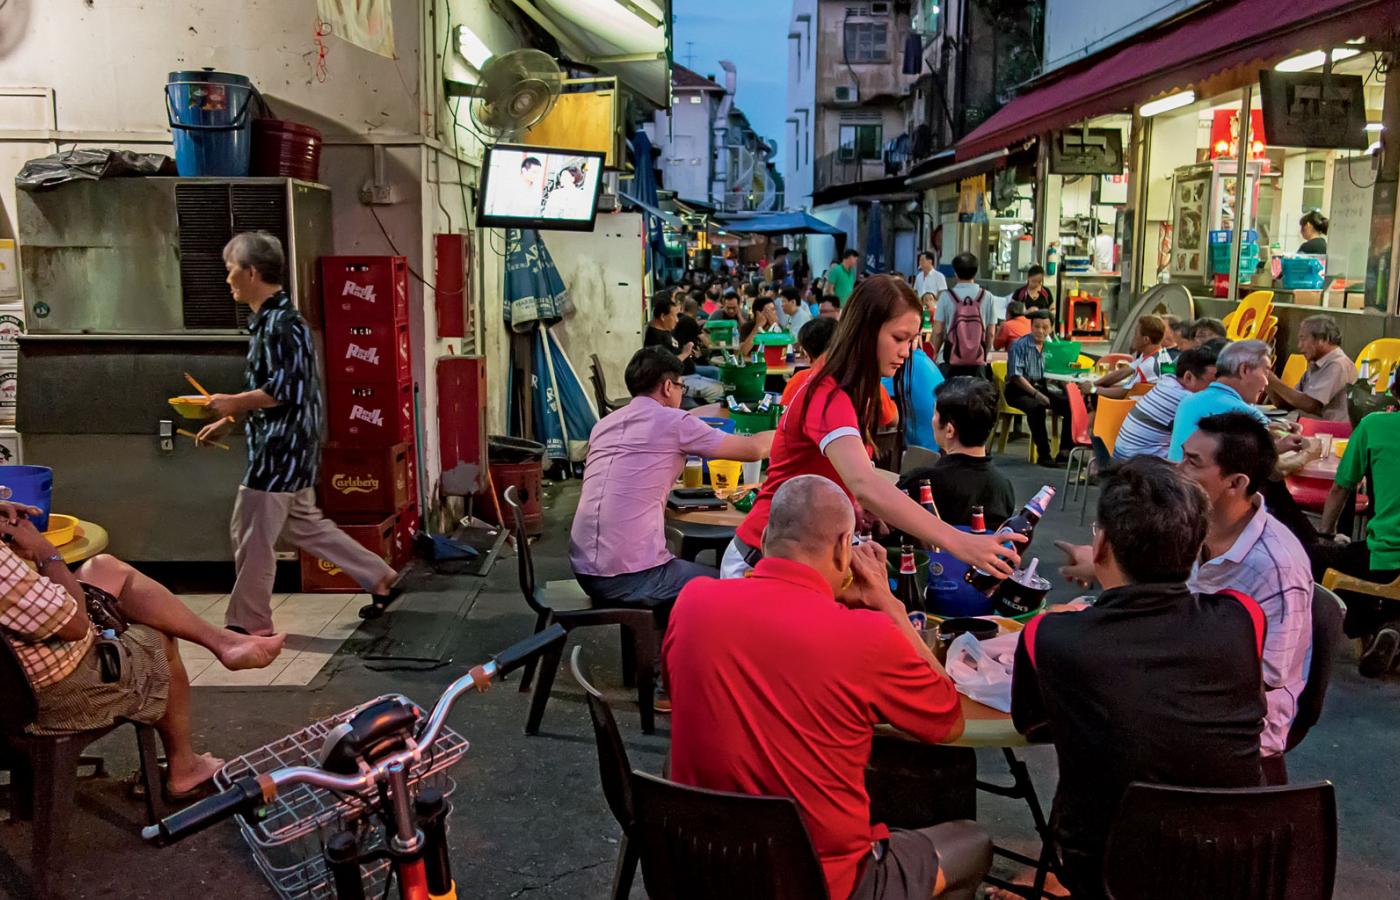 Geylang: zbrodnie namiętności, gangsterskie porachunki, świetna kuchnia, ołtarze wszystkich wyznań. Jeśli szukać Singapuru niesubordynowanego, to właśnie w tej dzielnicy.